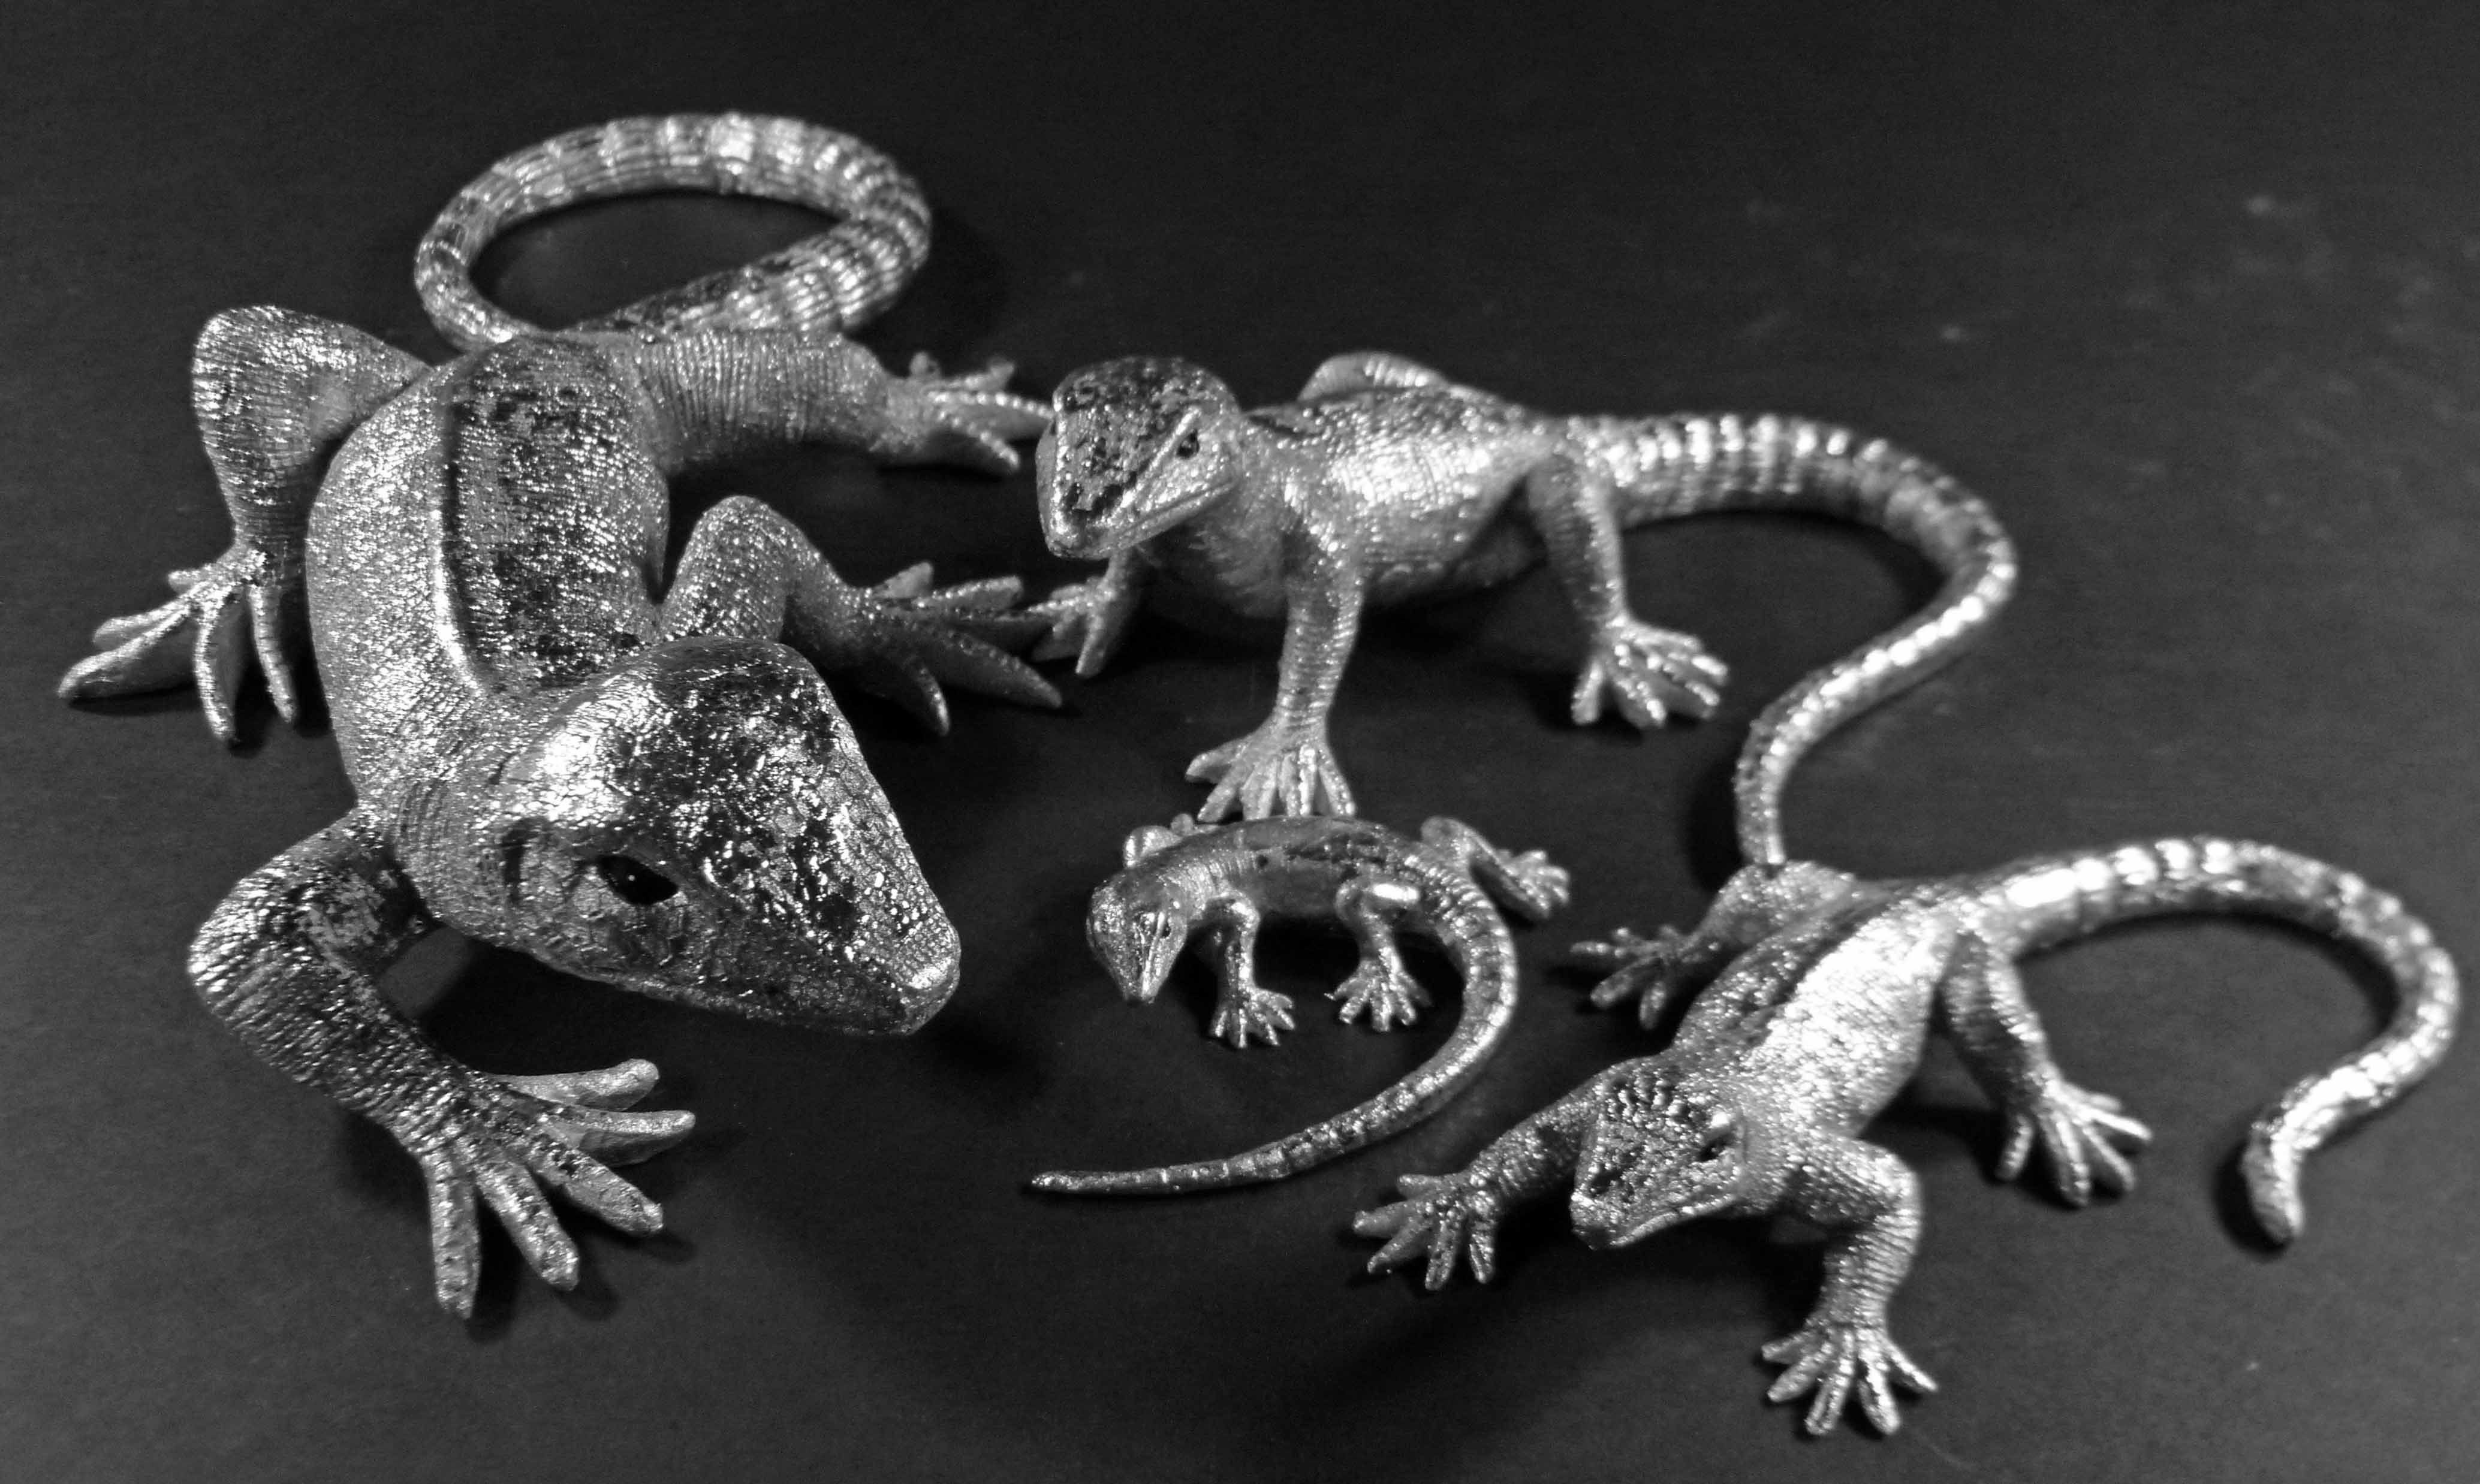 GlasArt Tierfigur Dekofigur Echse Eidechse Geckos 2er Set klein/groß silber (2er Set, 2 St., 2tlg), 100% Polyresin